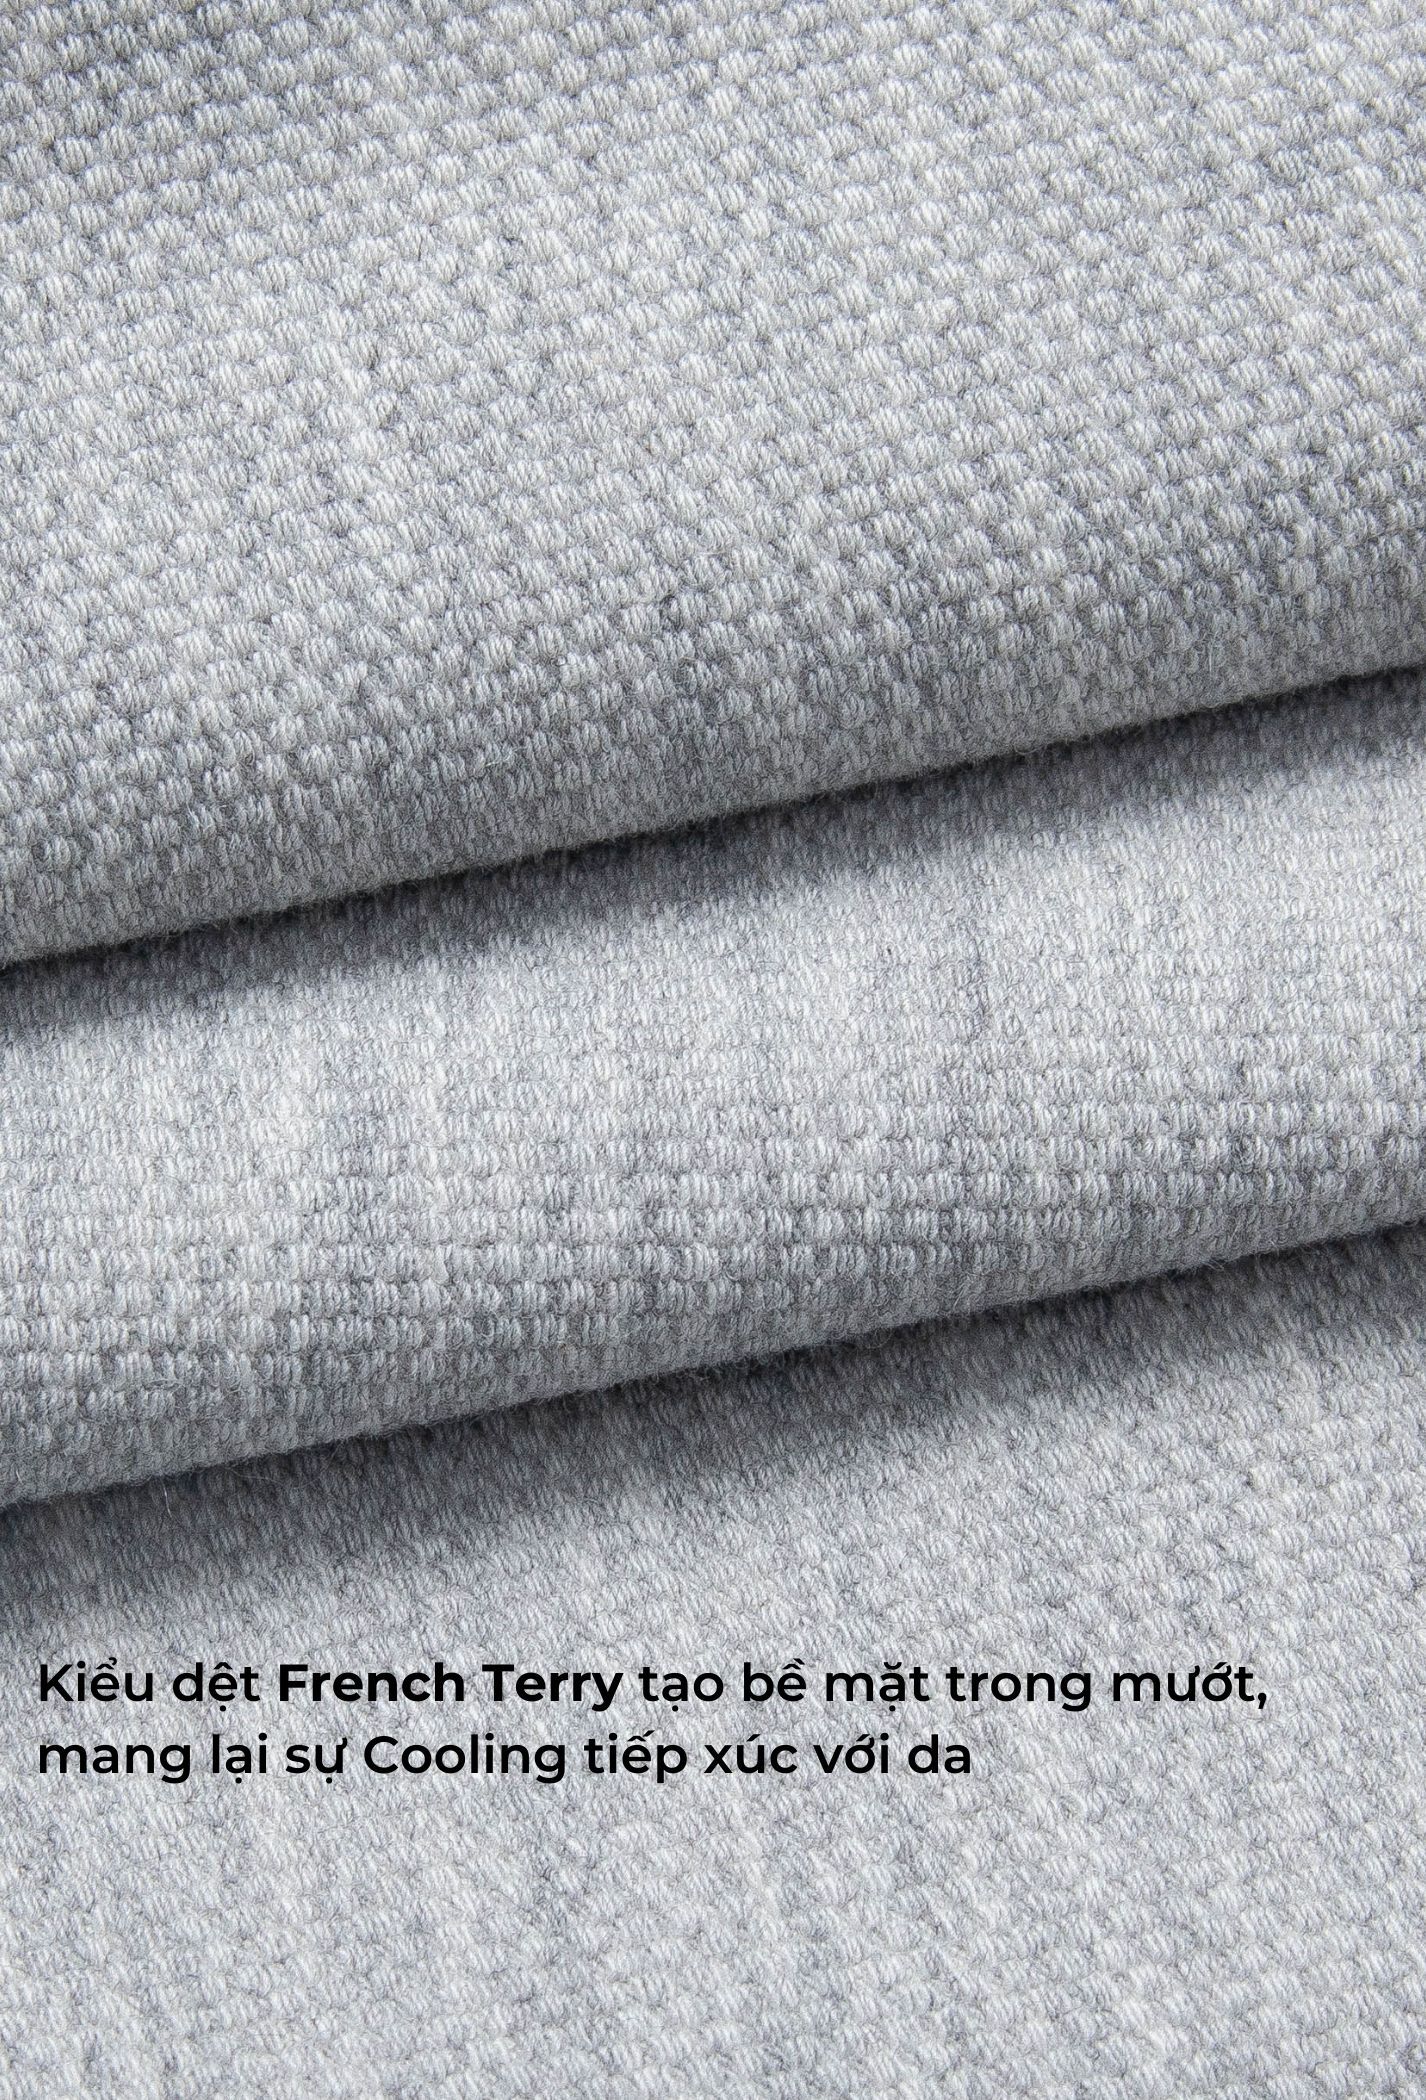 FLASH SALE - Quần Short Nam New French Terry Xám nhạt 5